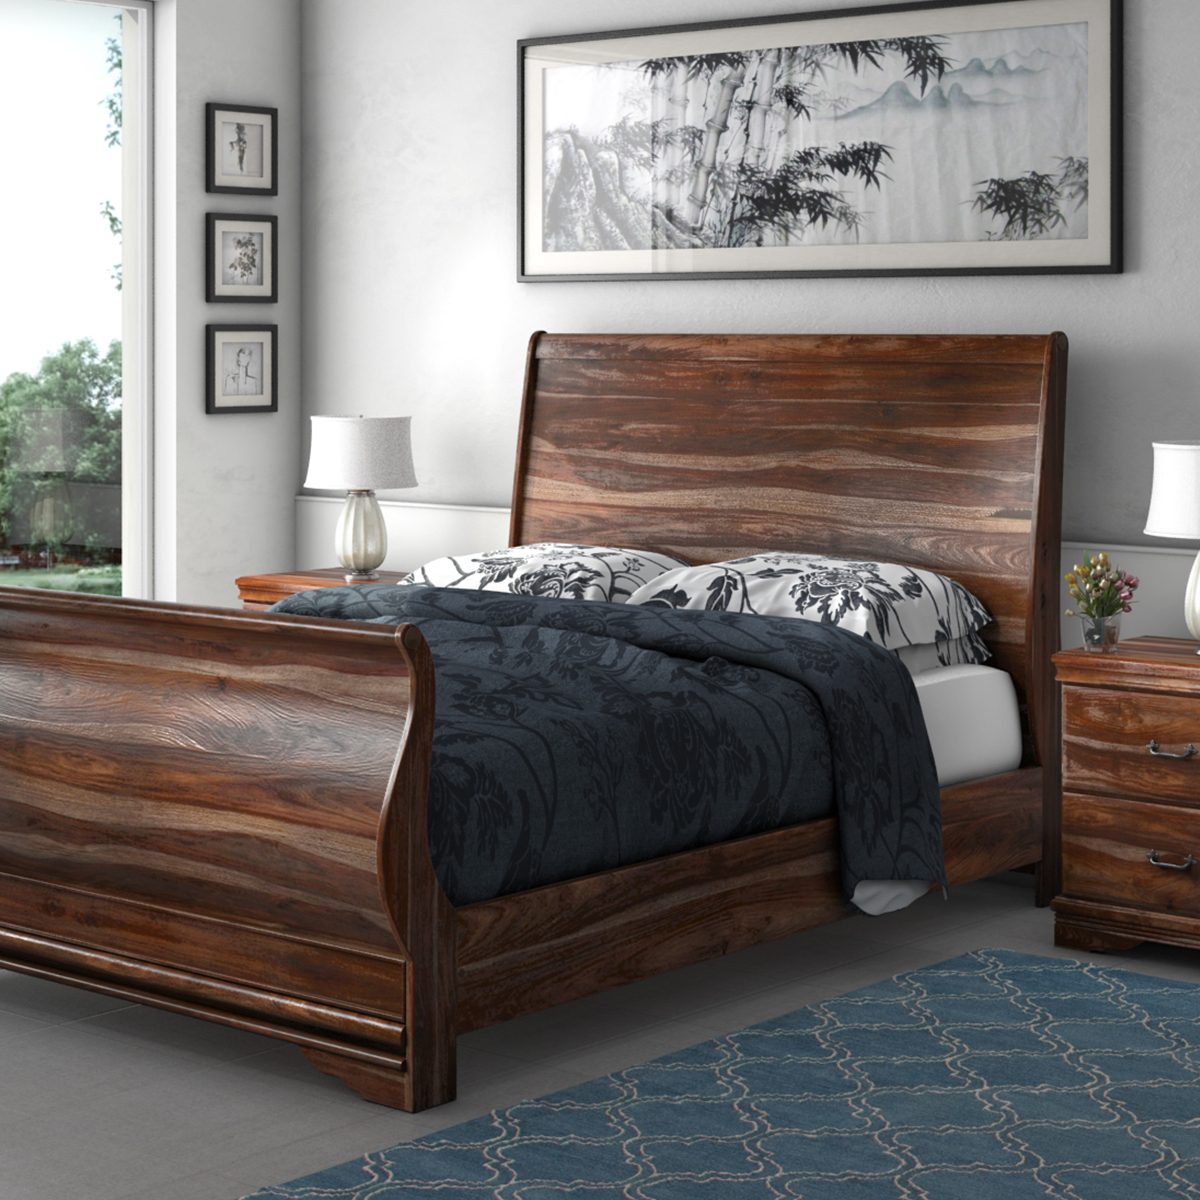 wooden bed frame king